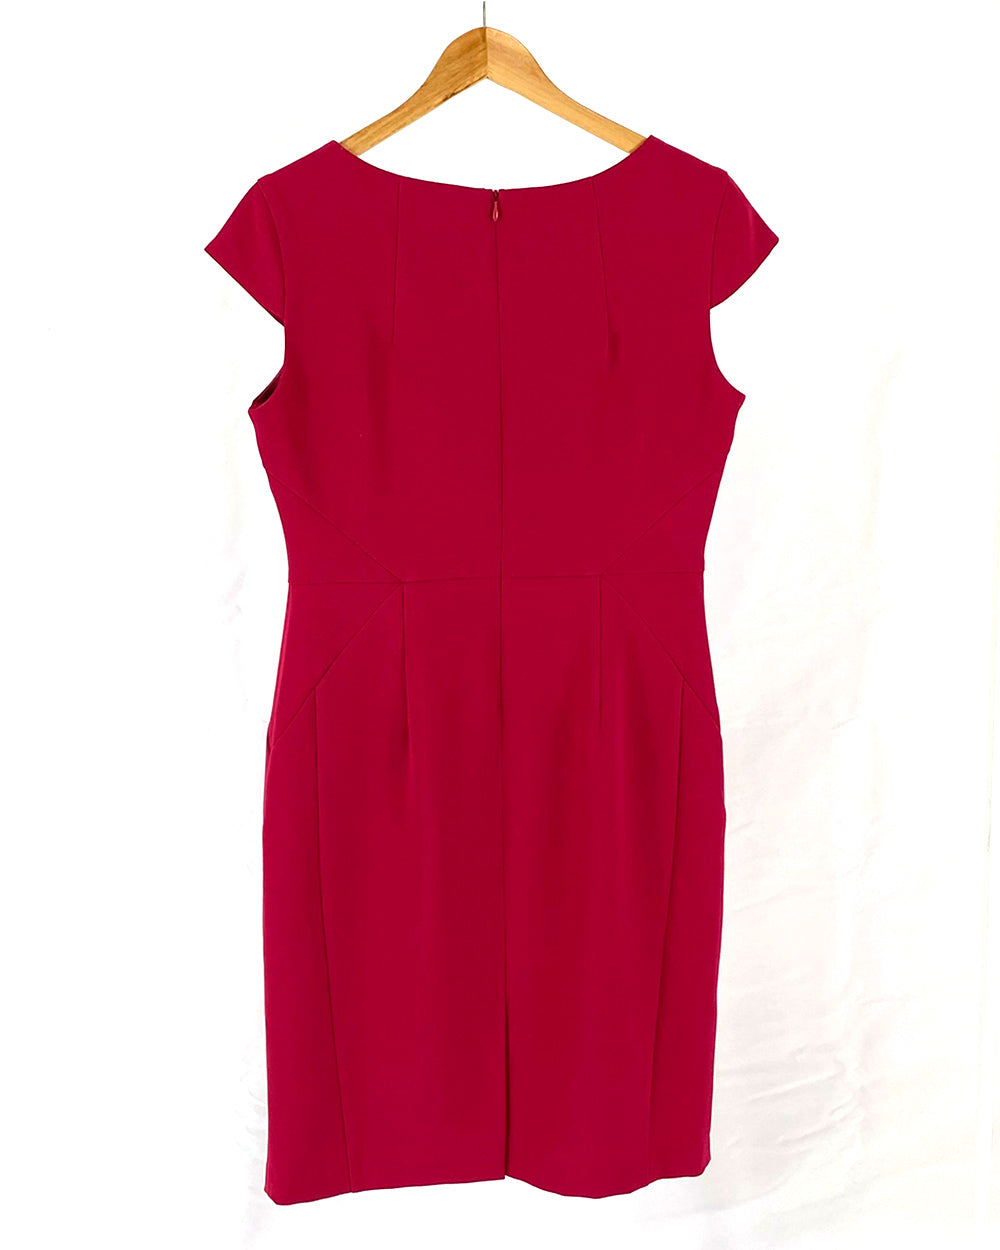 Pied A Terra Pink Short Sleeved Dress UK 12